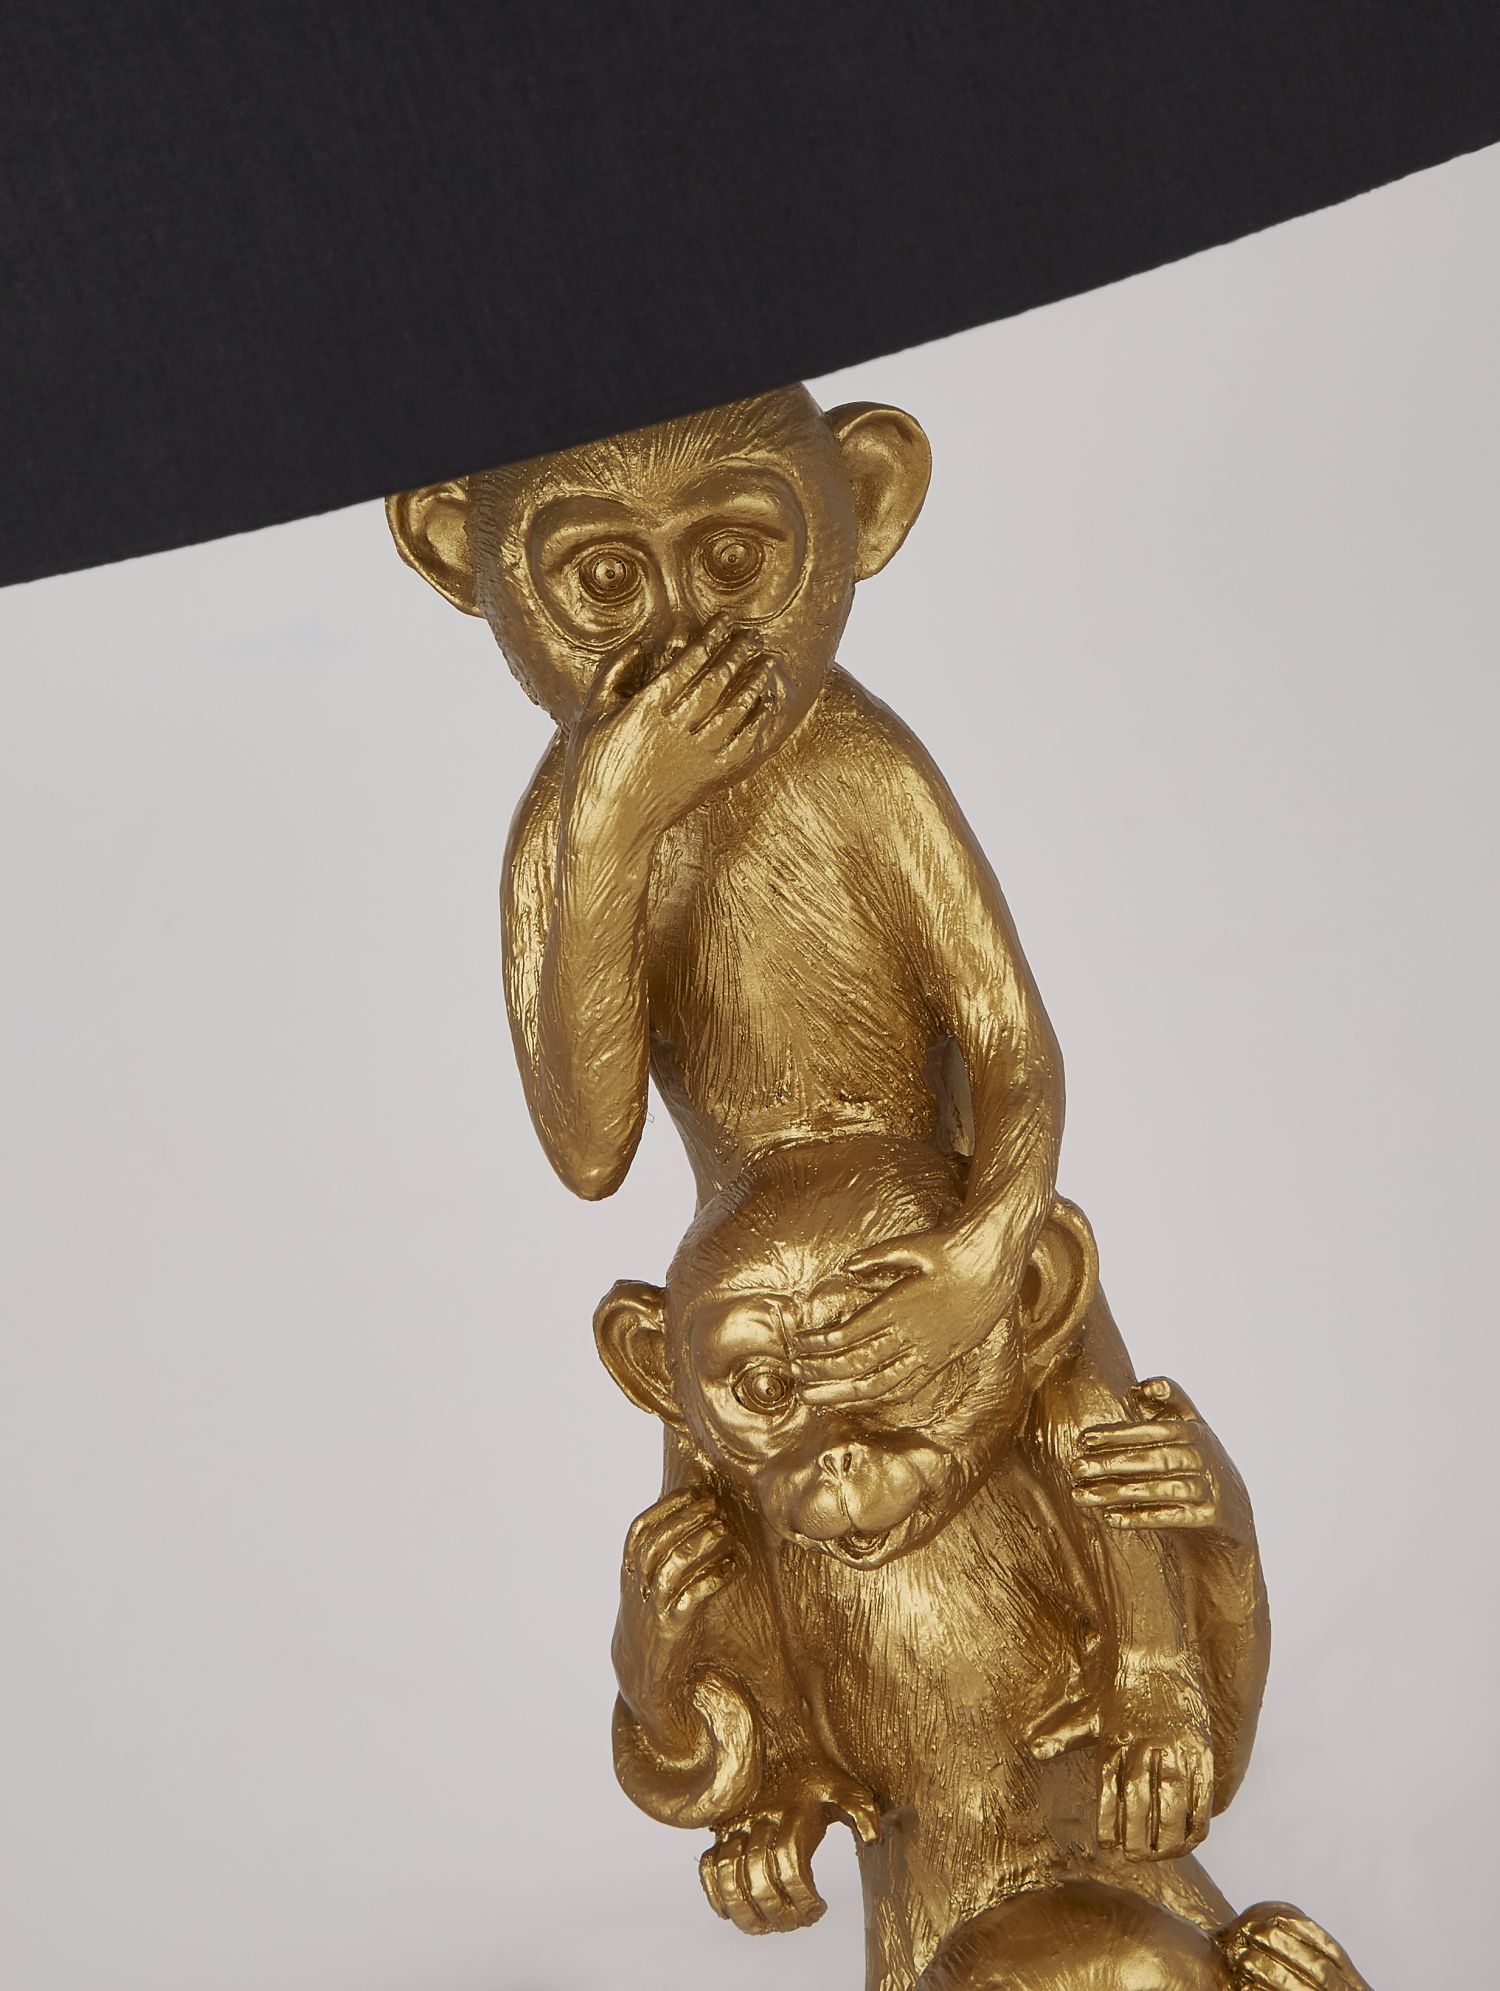 Tischlampe Schwarz Gold 51,5 cm hoch E27 Stoff Resin Affen